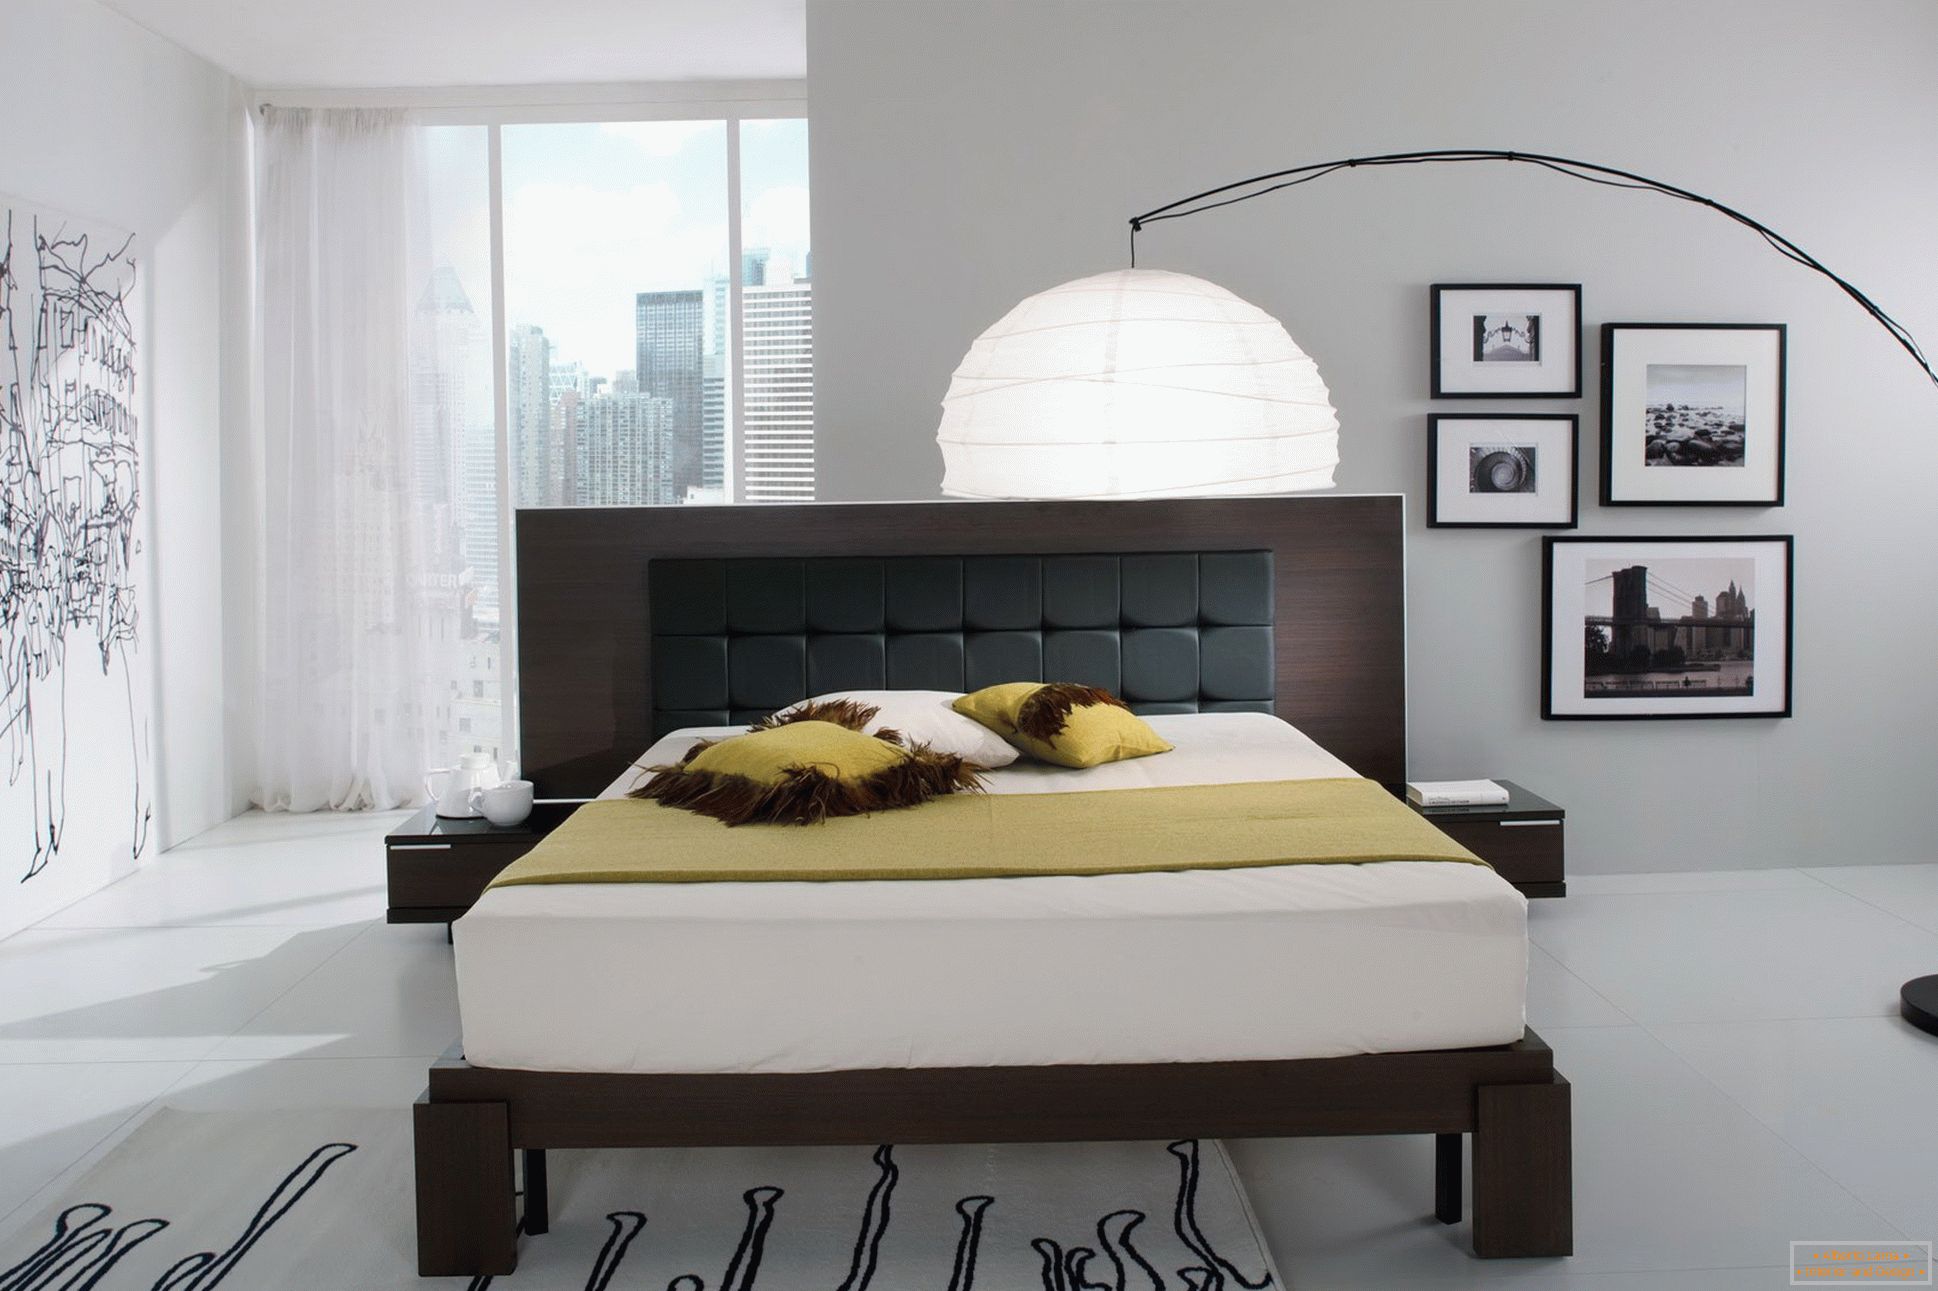 Chambre à coucher de style Art Nouveau